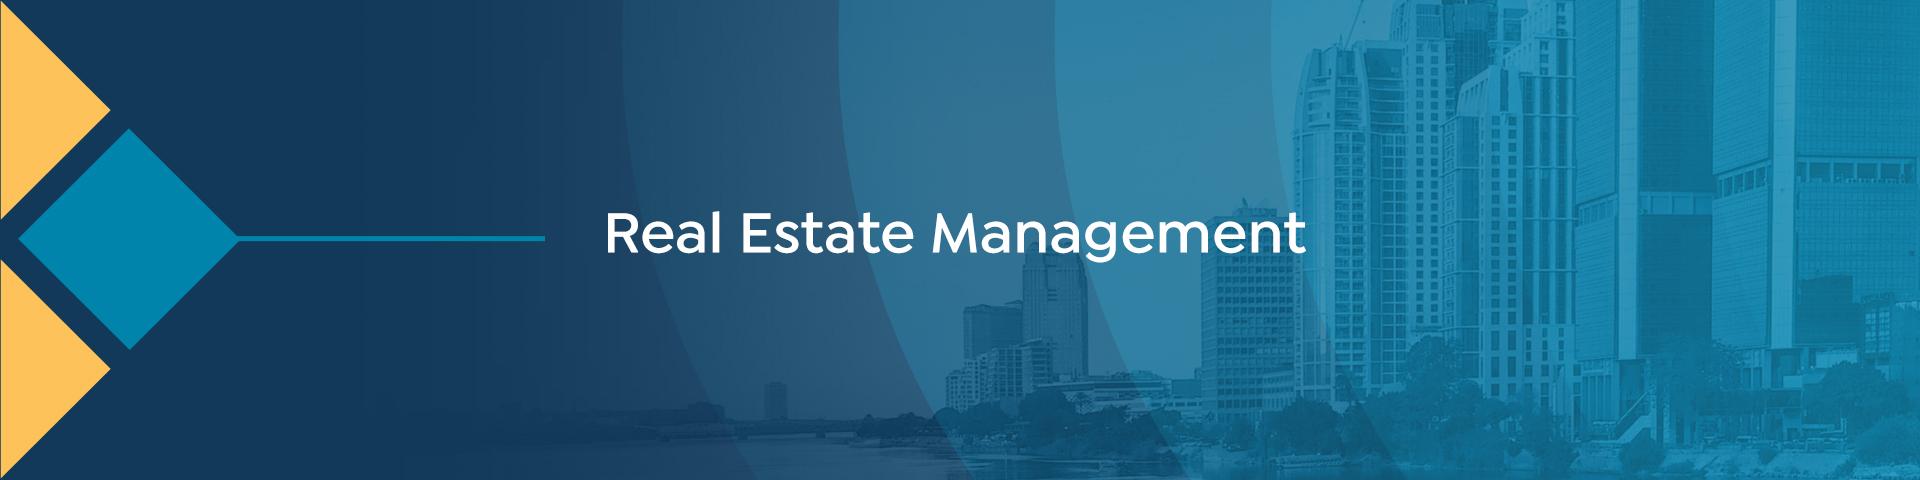 Real Estate Management 